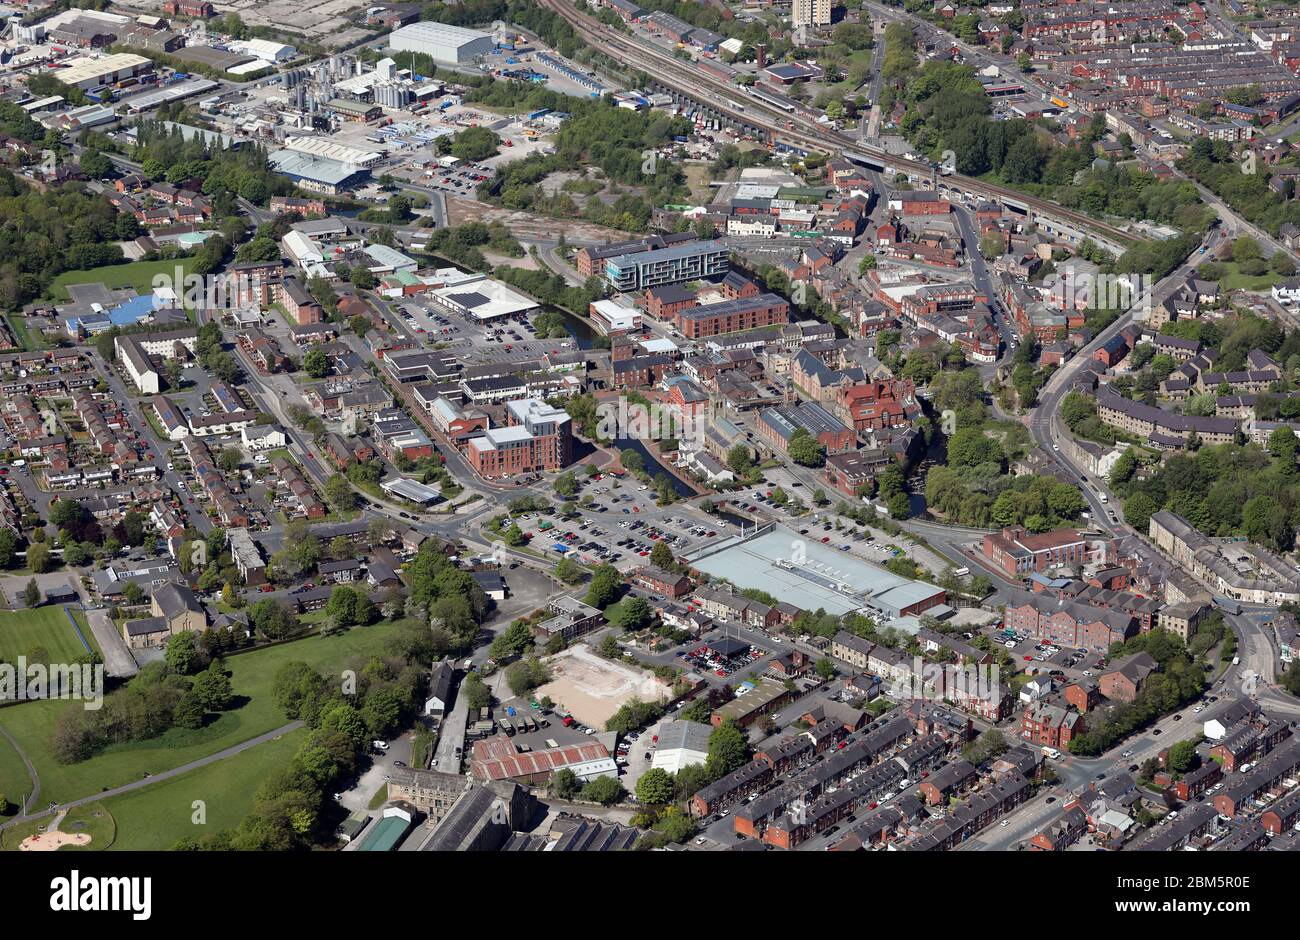 aerial view of Stalybridge town centre Stock Photo